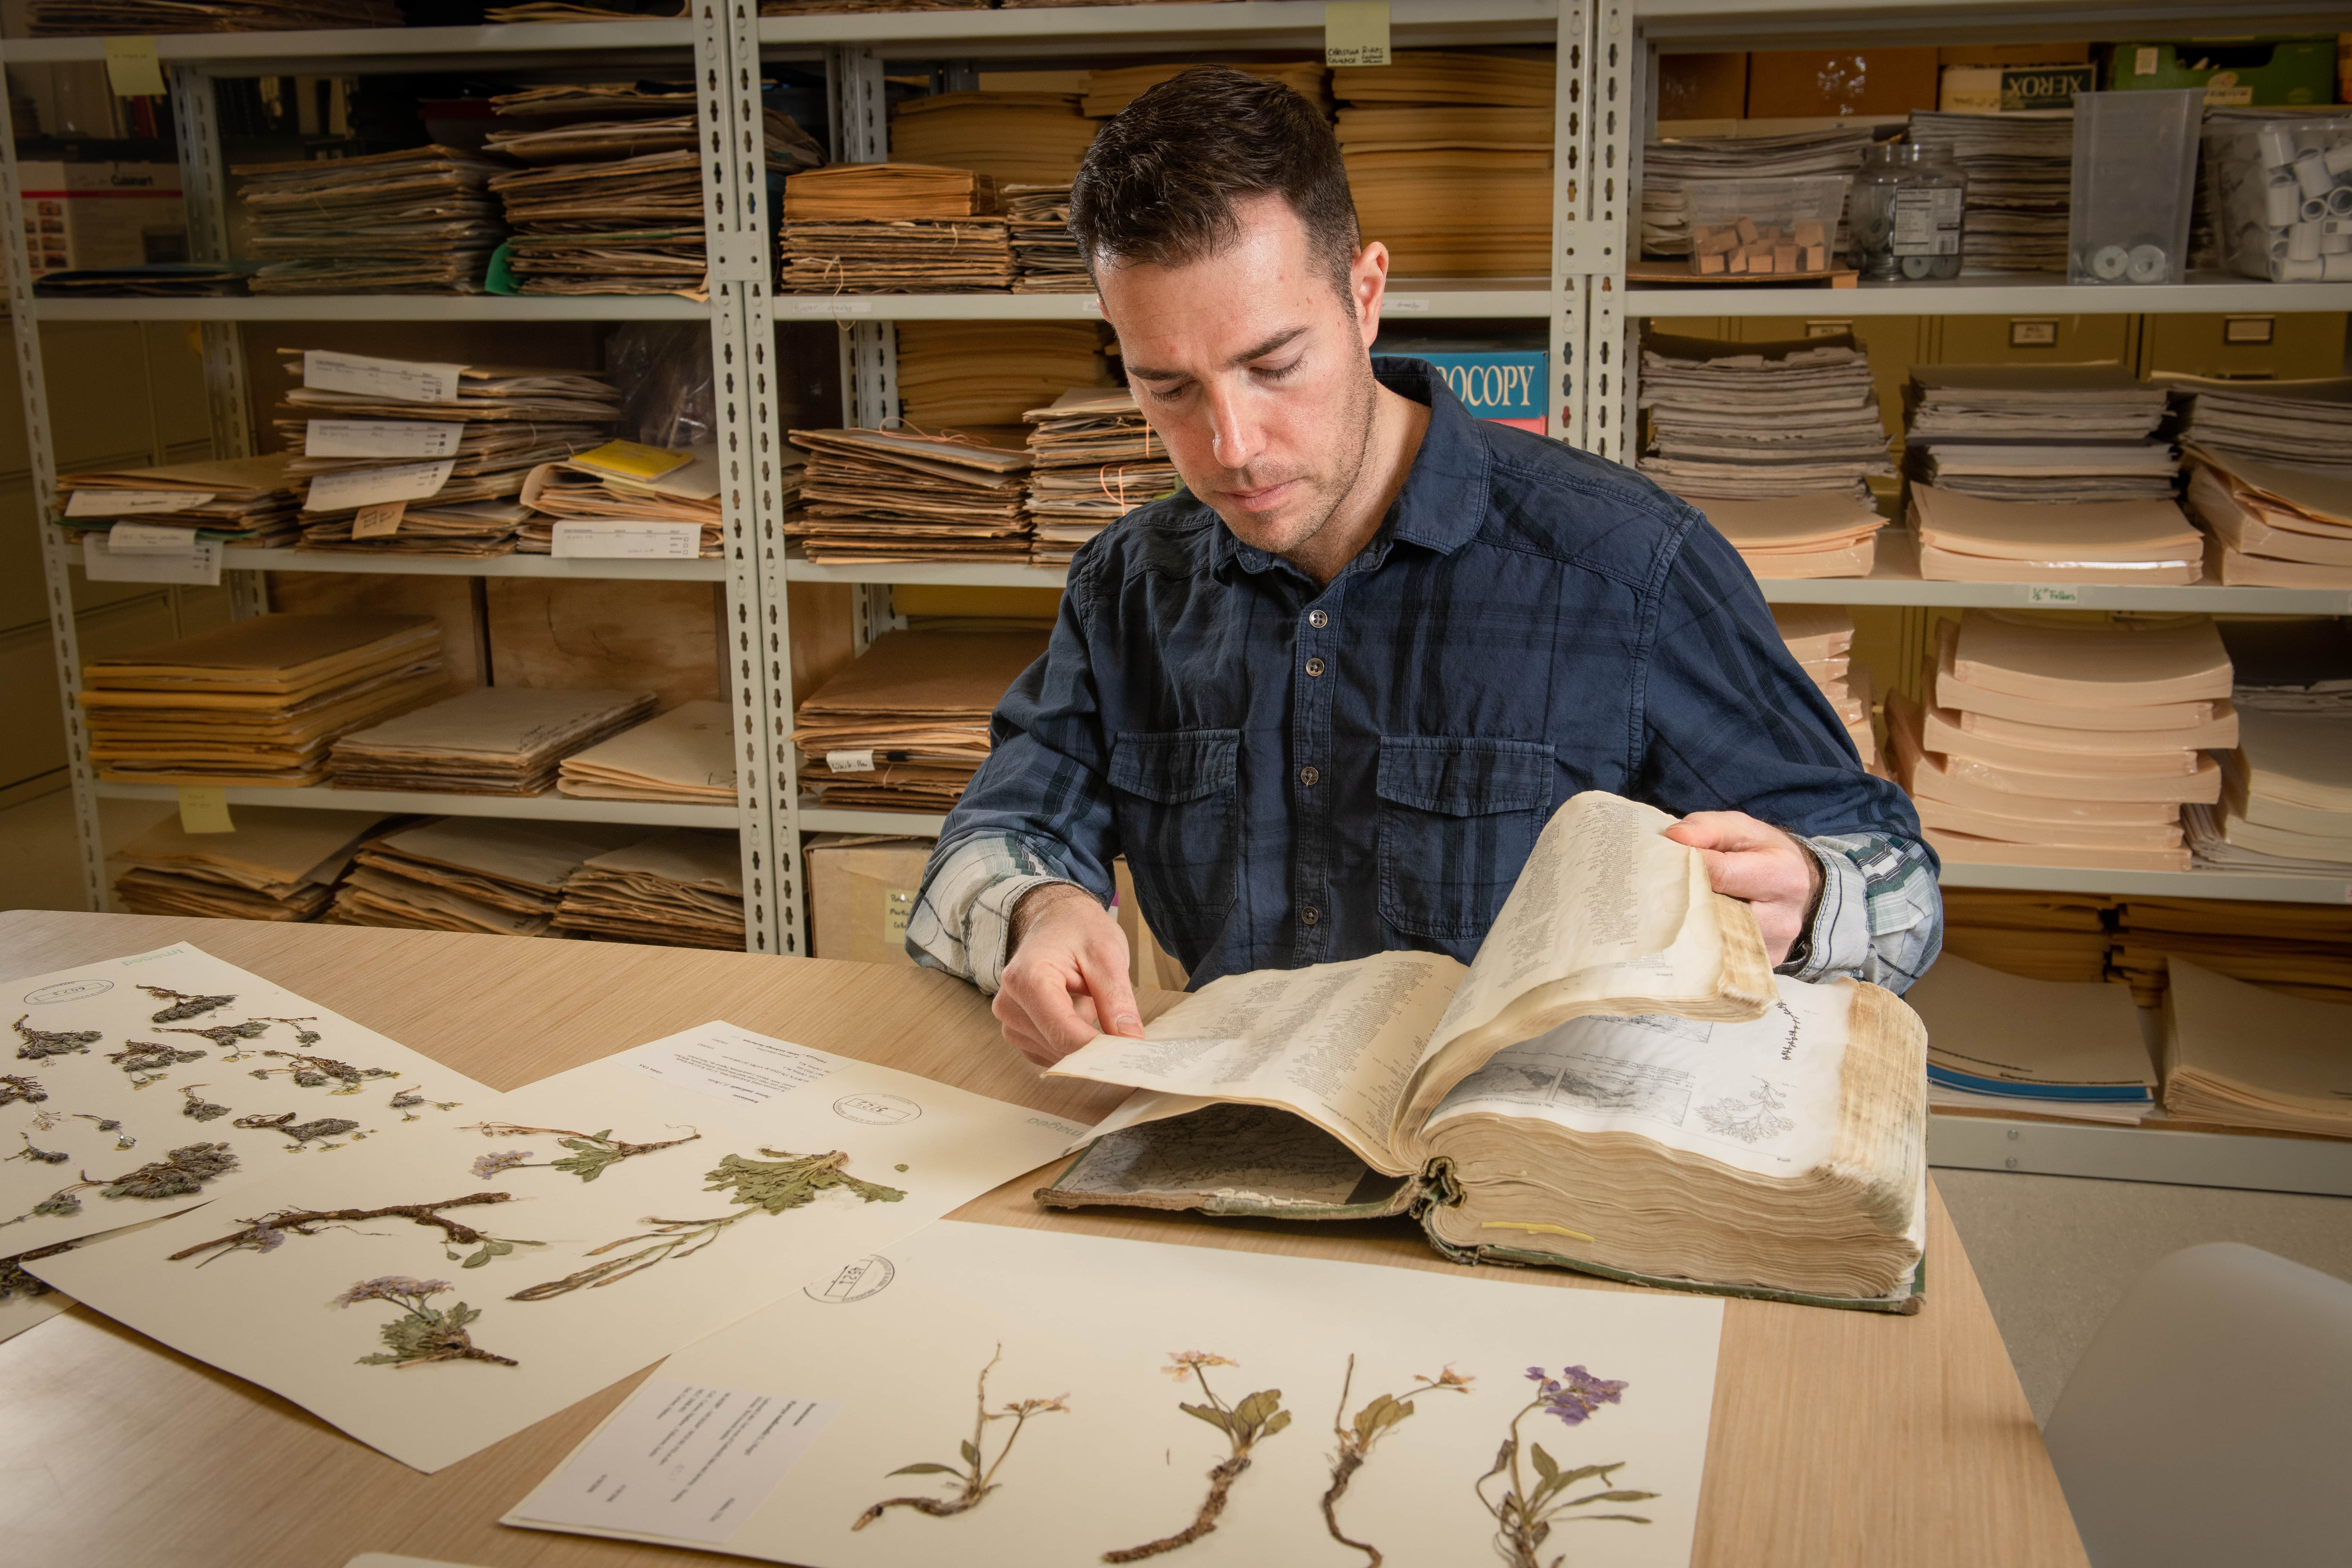 Photo in the Herbarium